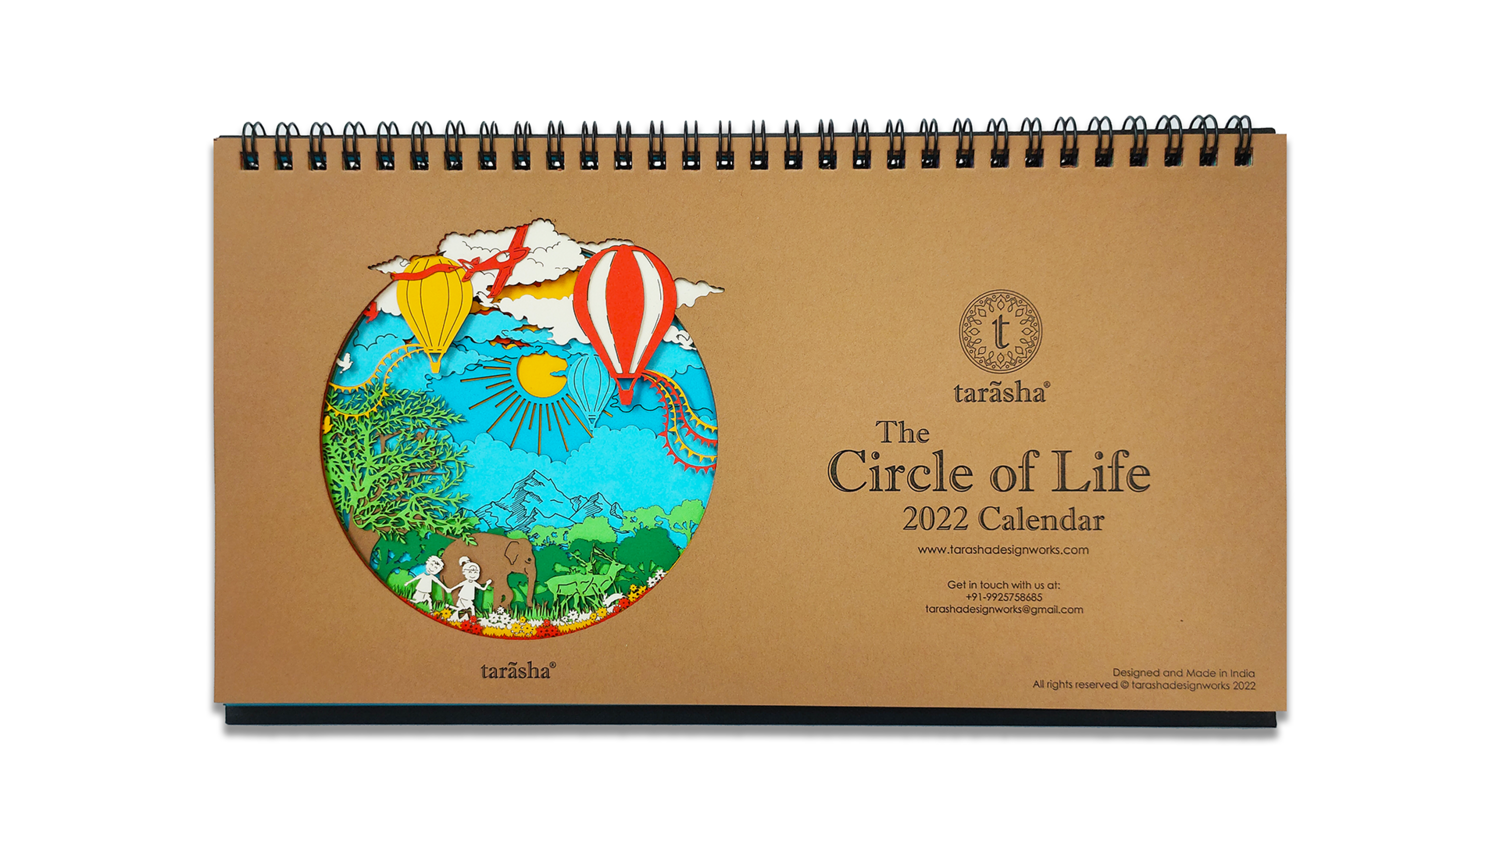 'The Circle of Life' Calendar 2022